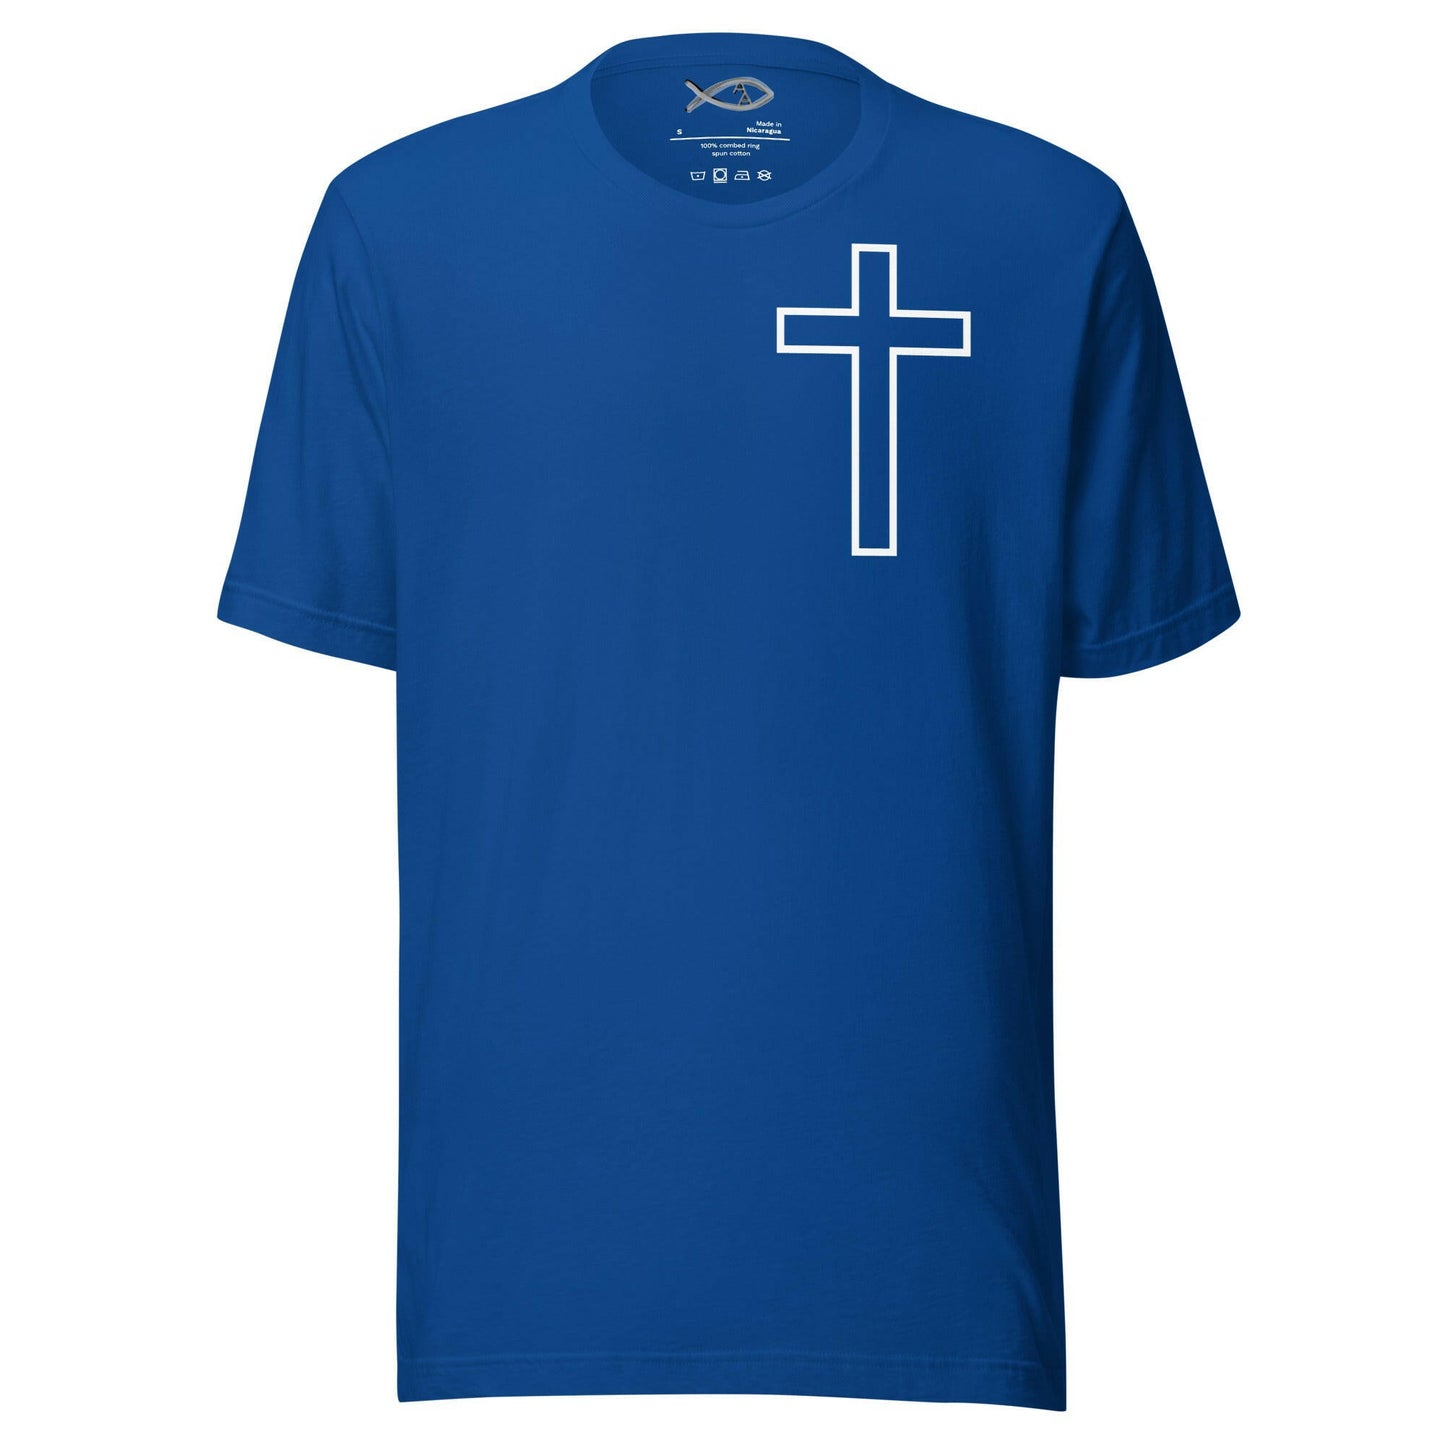 Hollow Crucufix - Unisex T-Shirt